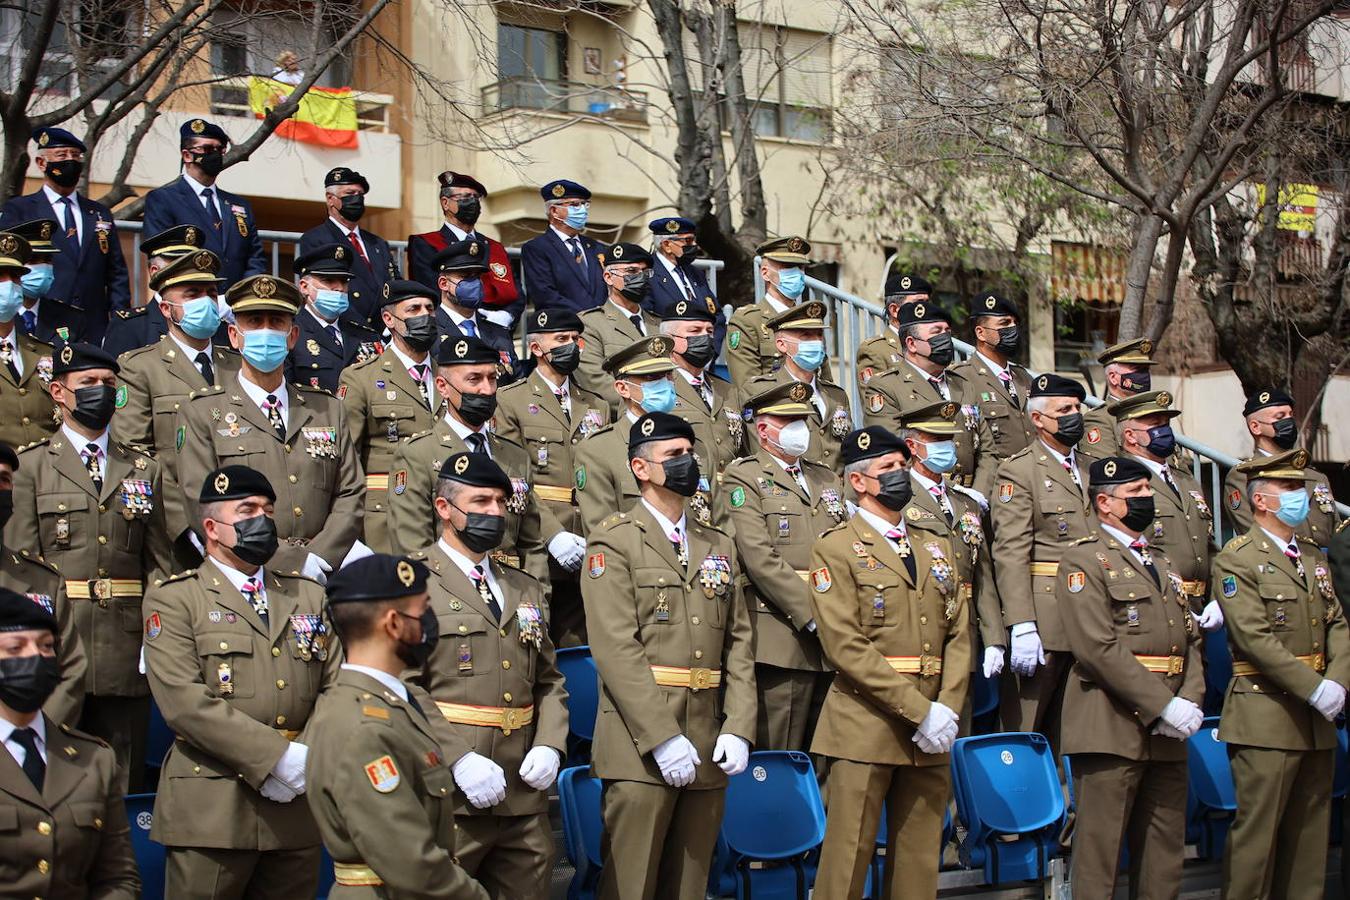 La solemne jura civil de bandera en Córdoba, en imágenes